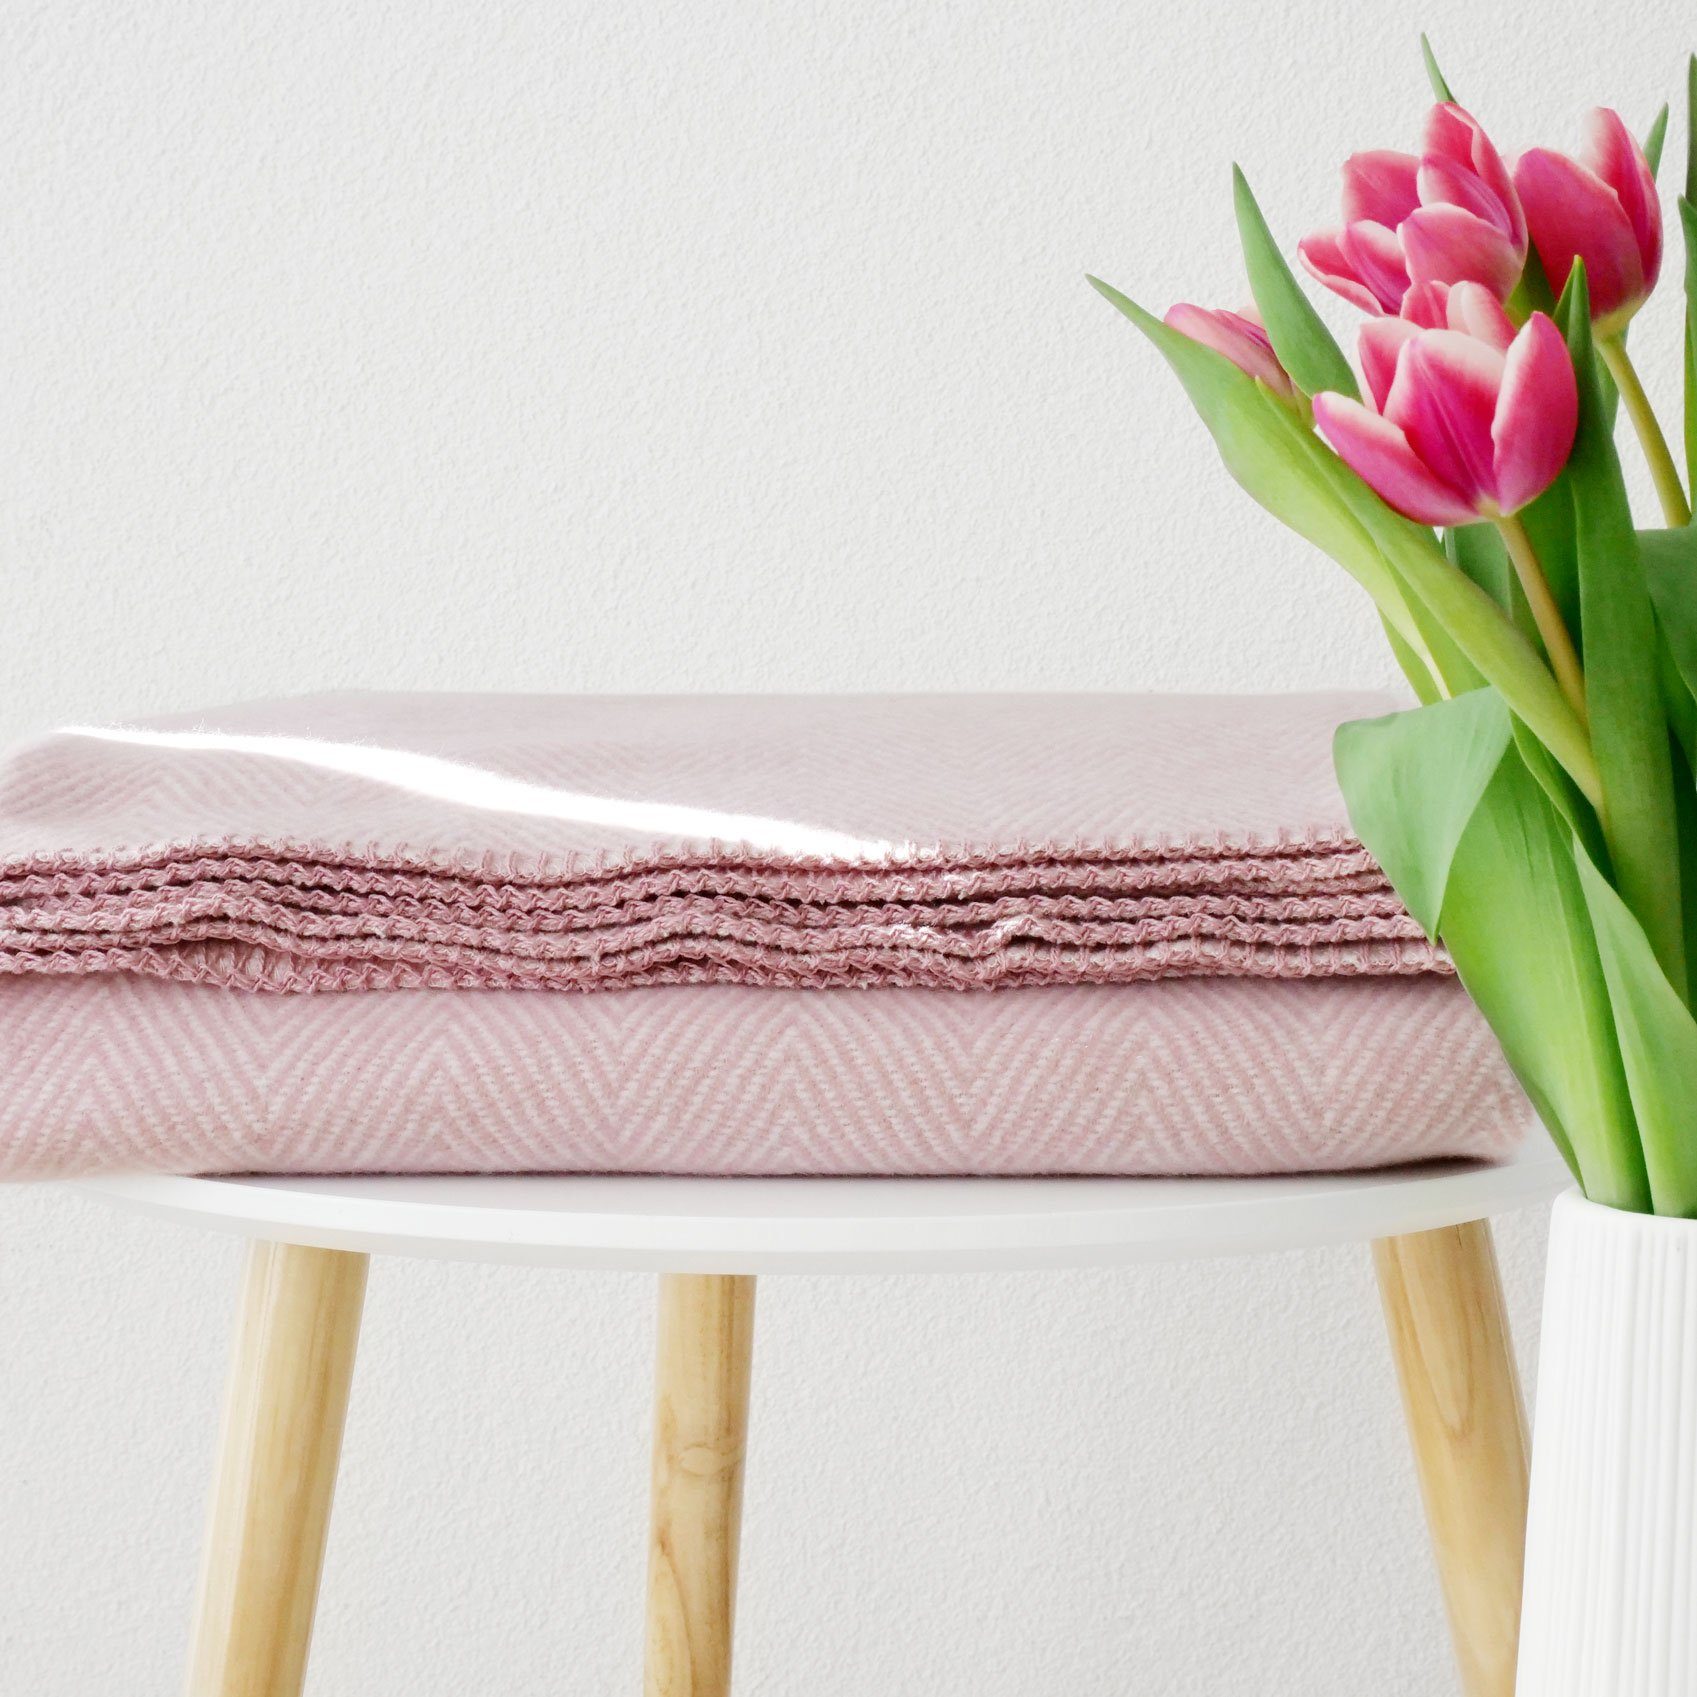 Sofa, OEKO-TEX - fürs weiche Sofadecke Finn Kuscheldecken Baumwolle, Wolldecke nachhaltig in aus 100% RIEMA Decke Germany leichte Germany, biologischer Made rosa